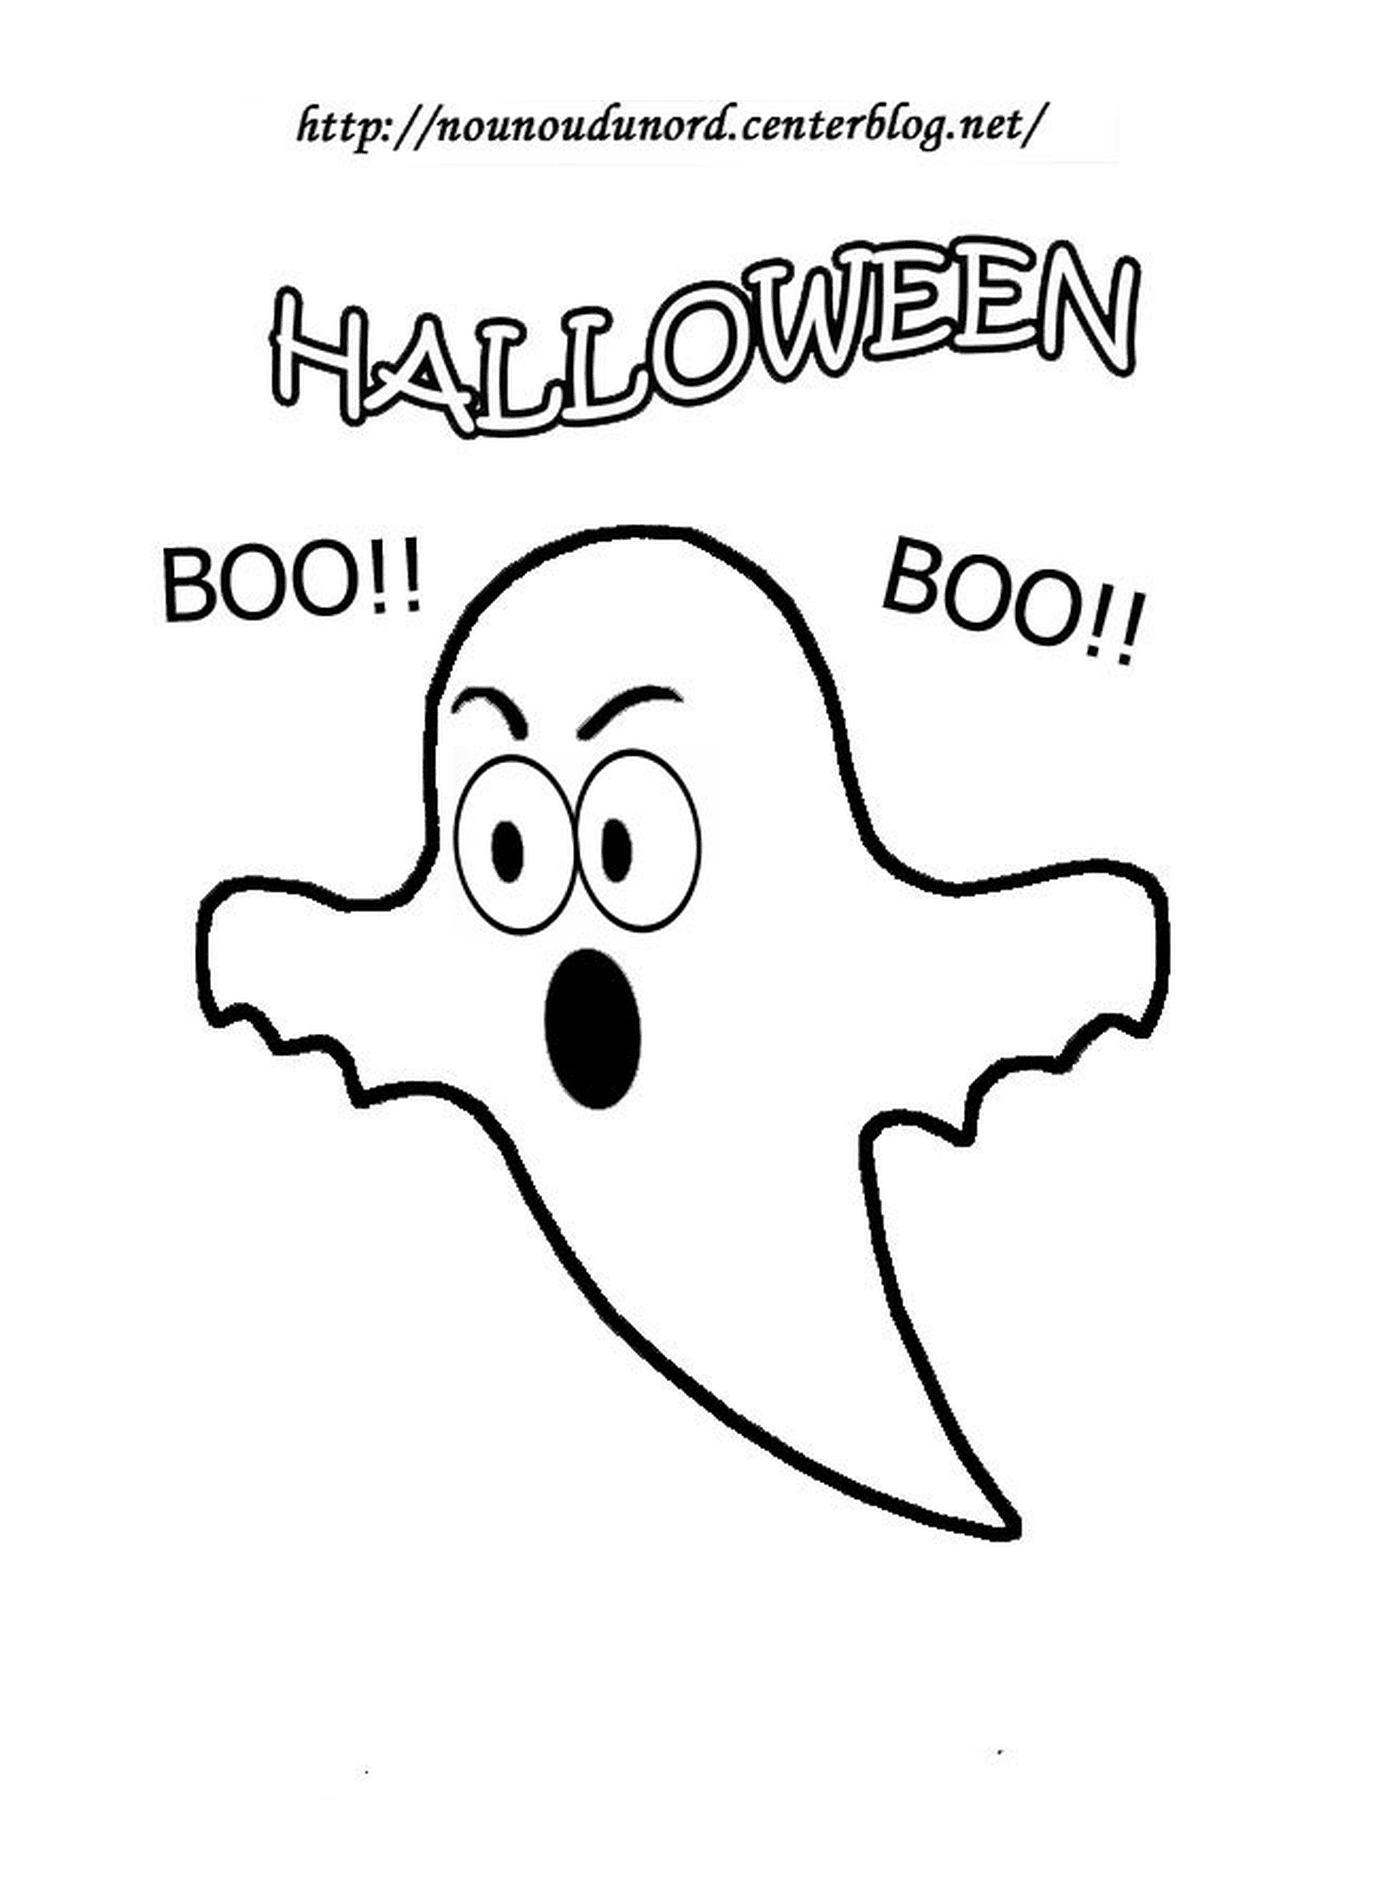  Halloween, boo fantasma 